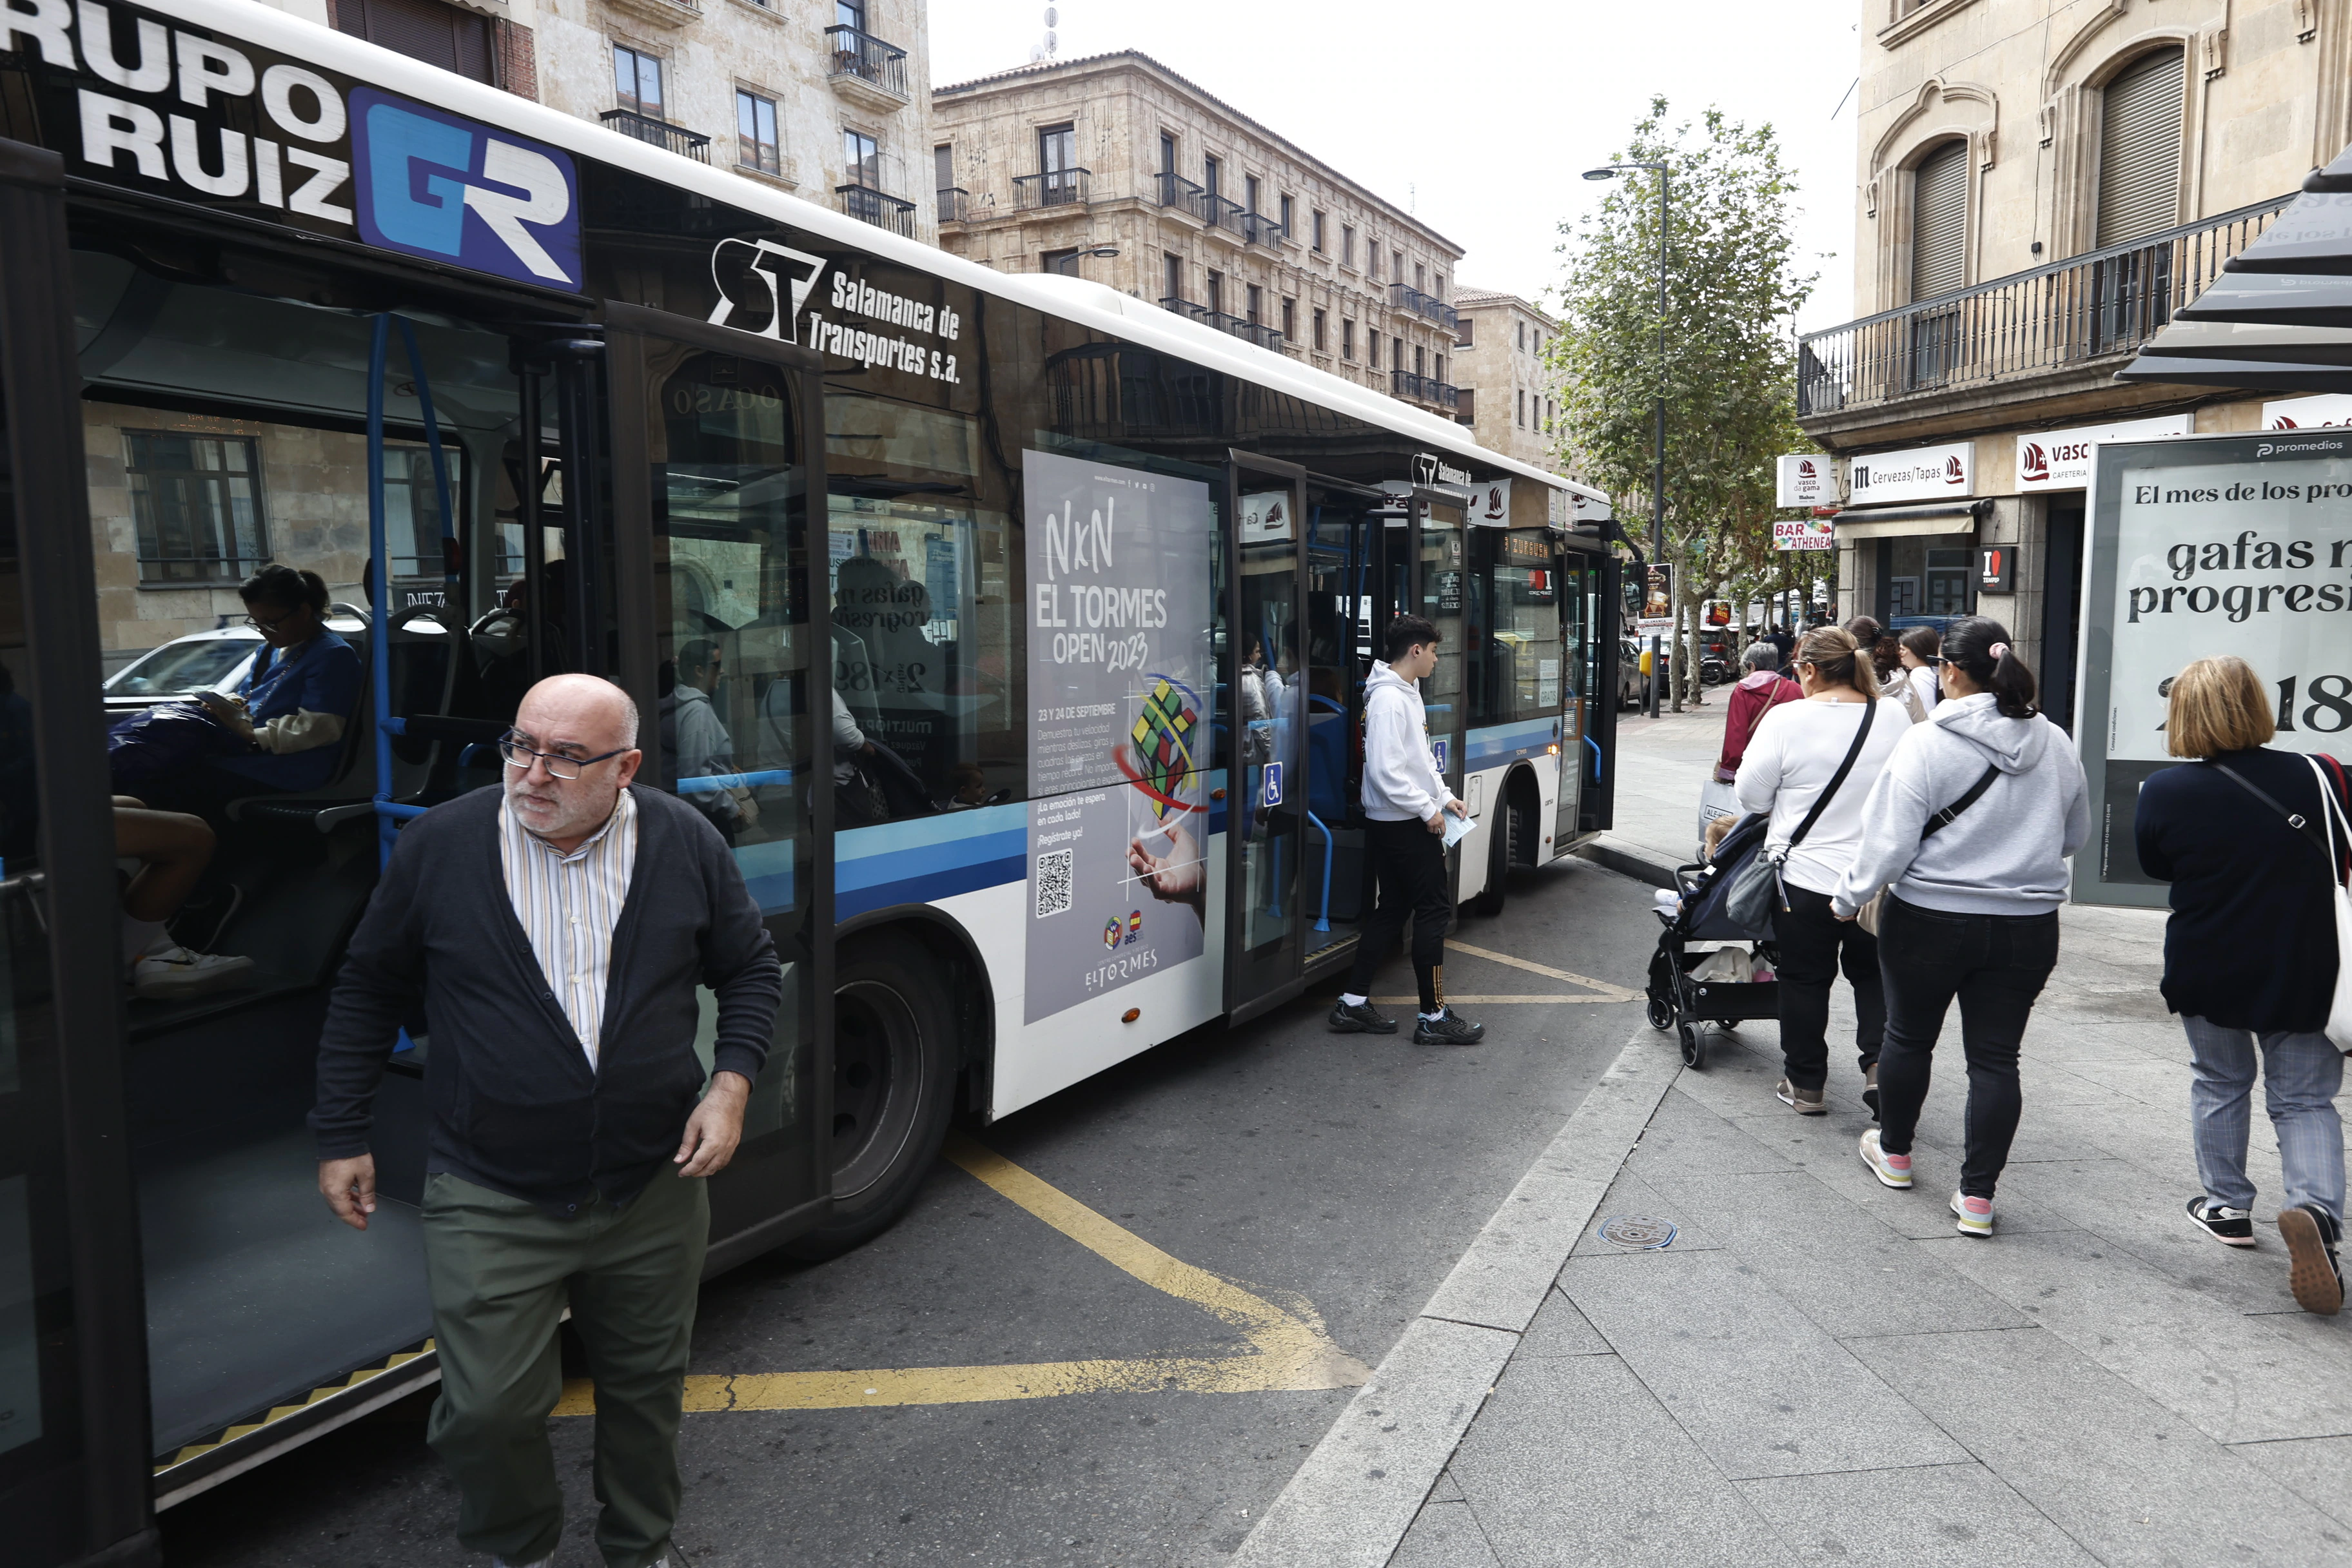 Así se ha vivido el Día sin Coche en los buses gratis de Salamanca